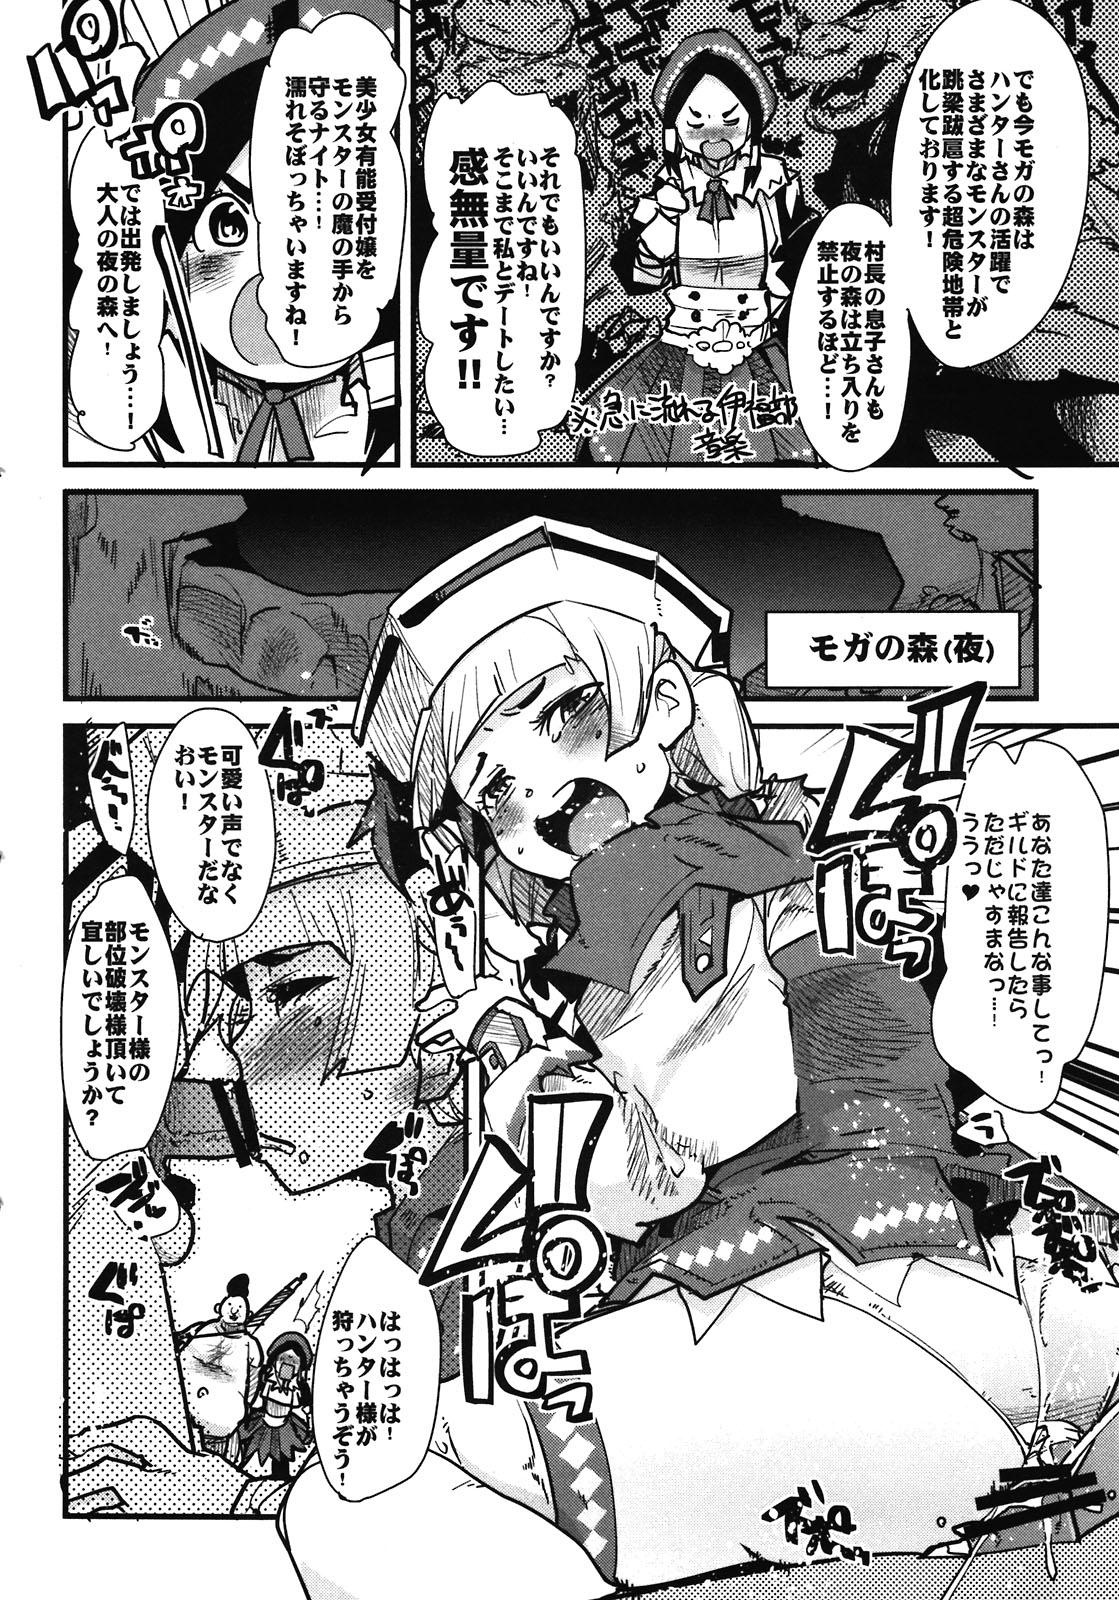 Bj Suteki Kanbanmusume 2 - Monster hunter Stockings - Page 4